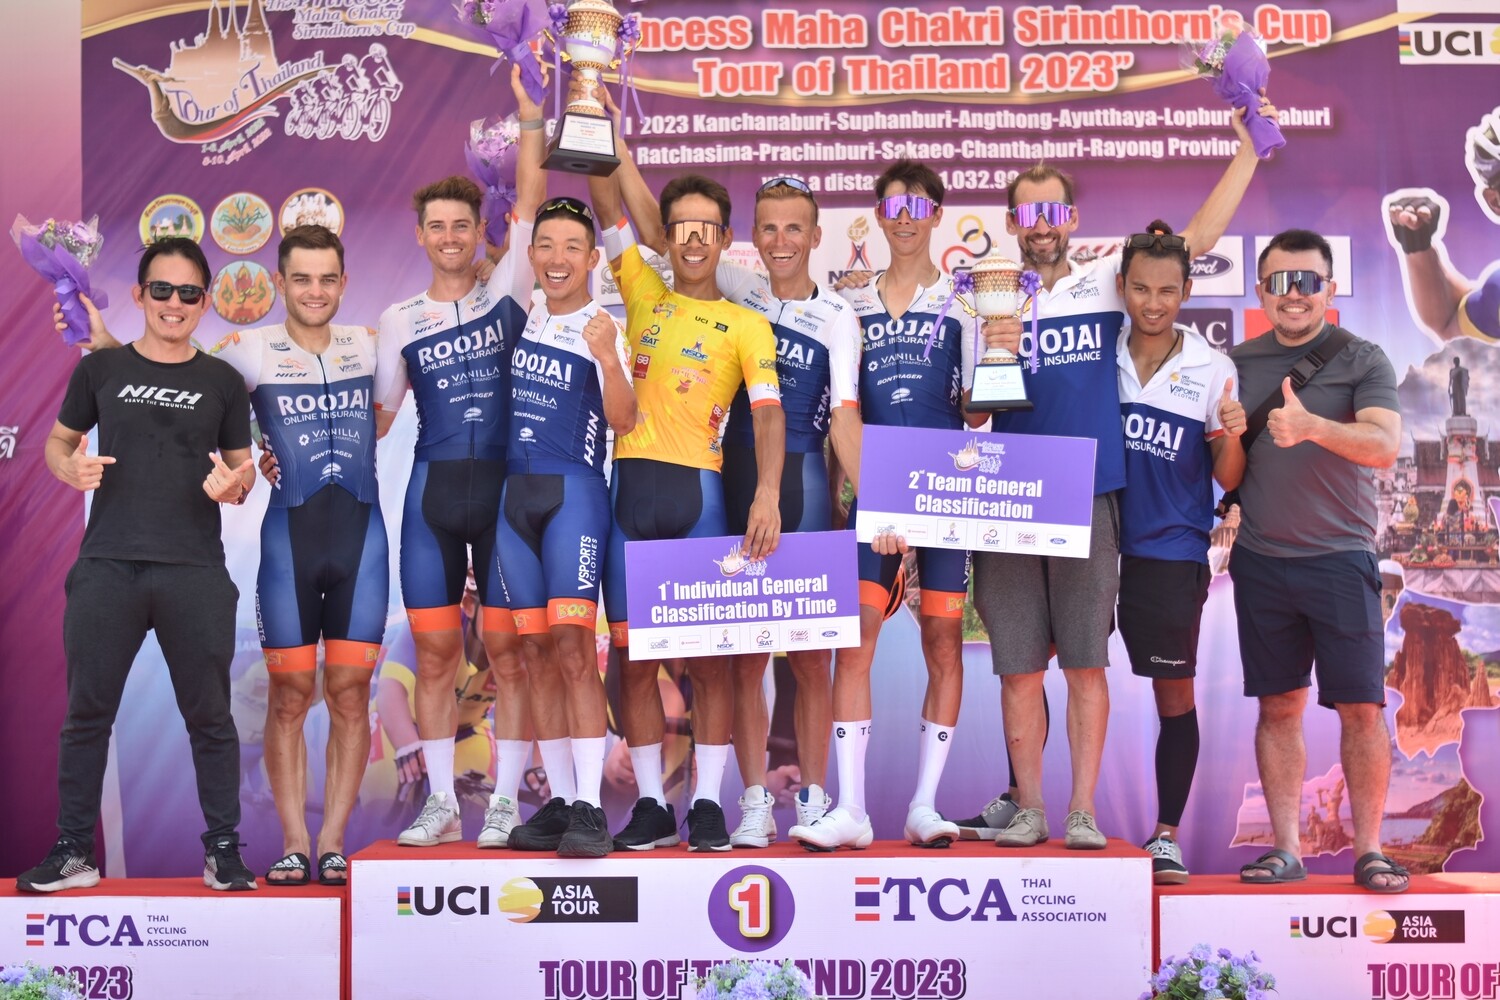 "รู้ใจ ไซคลิ่งทีม" ตั้งเป้าขึ้นท็อป 3 ทีมจักรยานเอเชีย หลังคว้าแชมป์ "ทัวร์ ออฟ ไทยแลนด์"